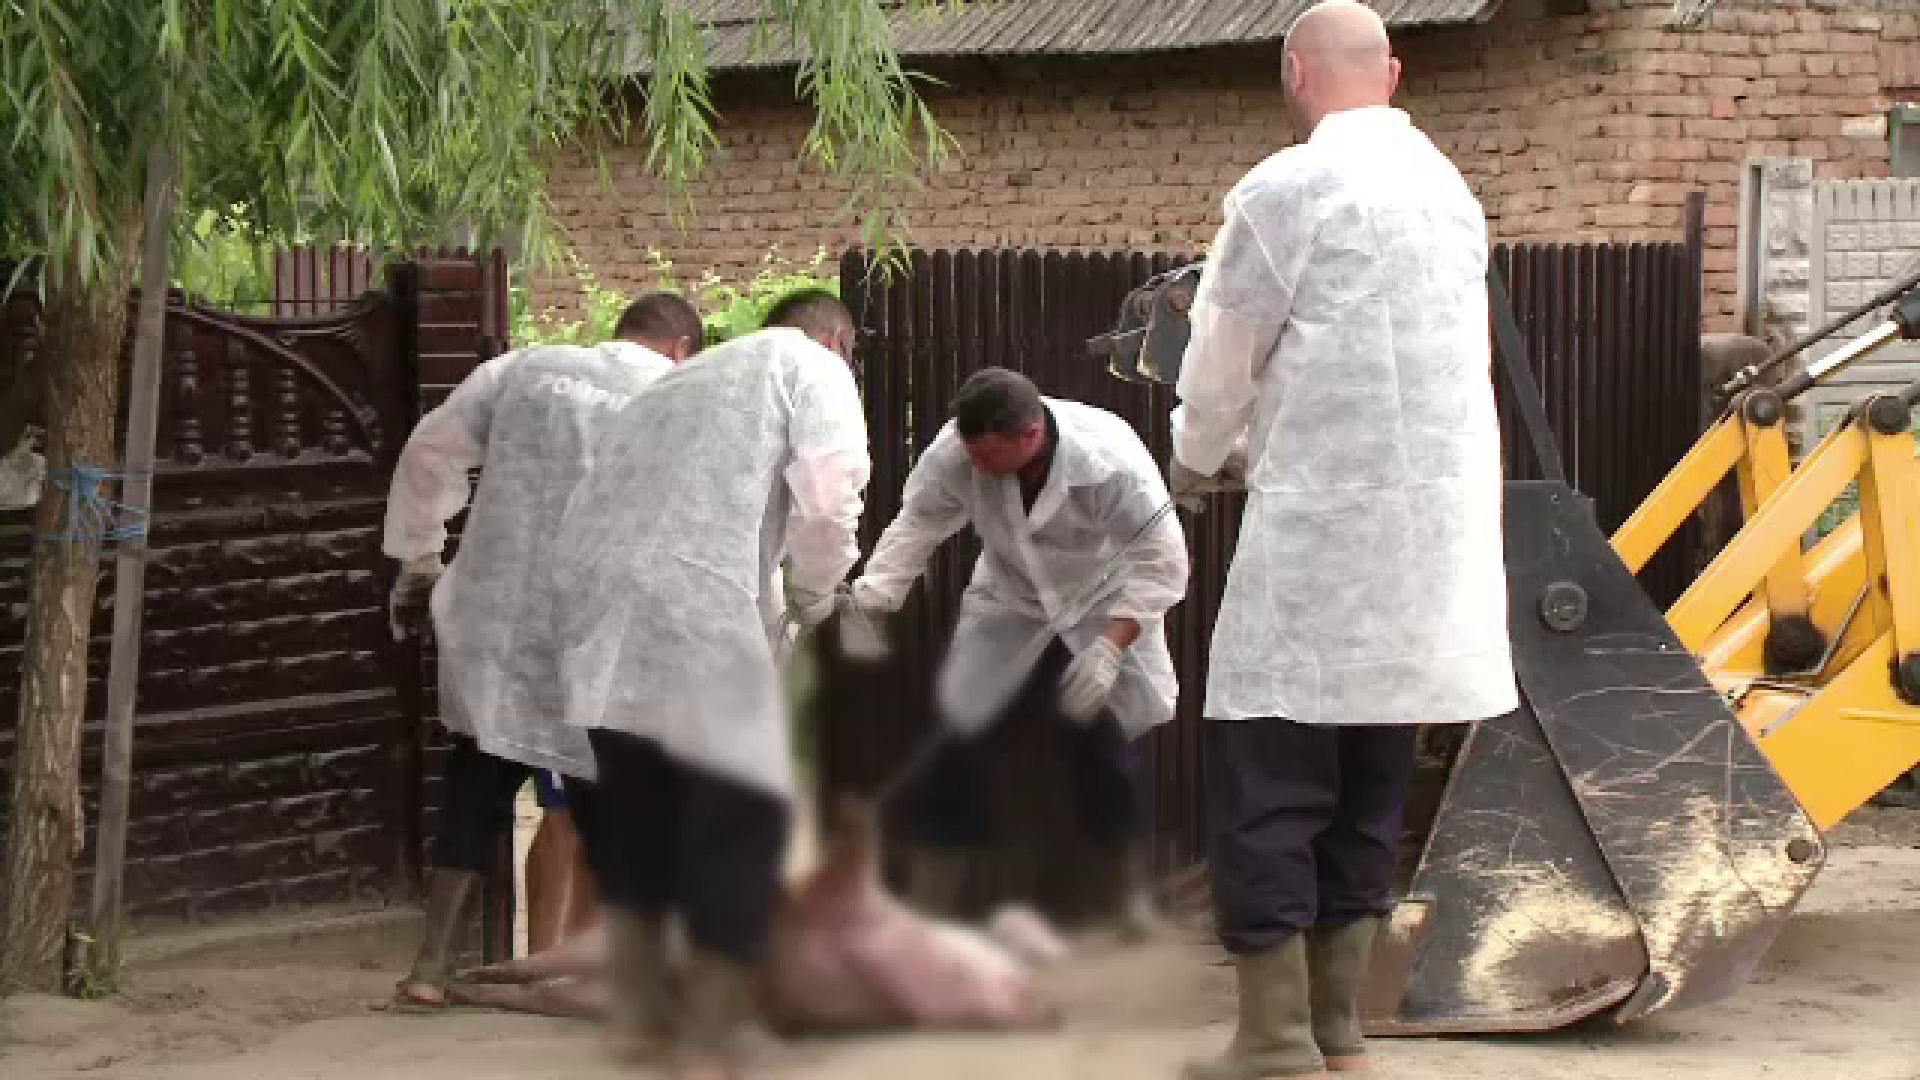 Pesta porcină face ravagii în satele româneşti. Localnică: ”M-am împrumutat ca să-i cresc”